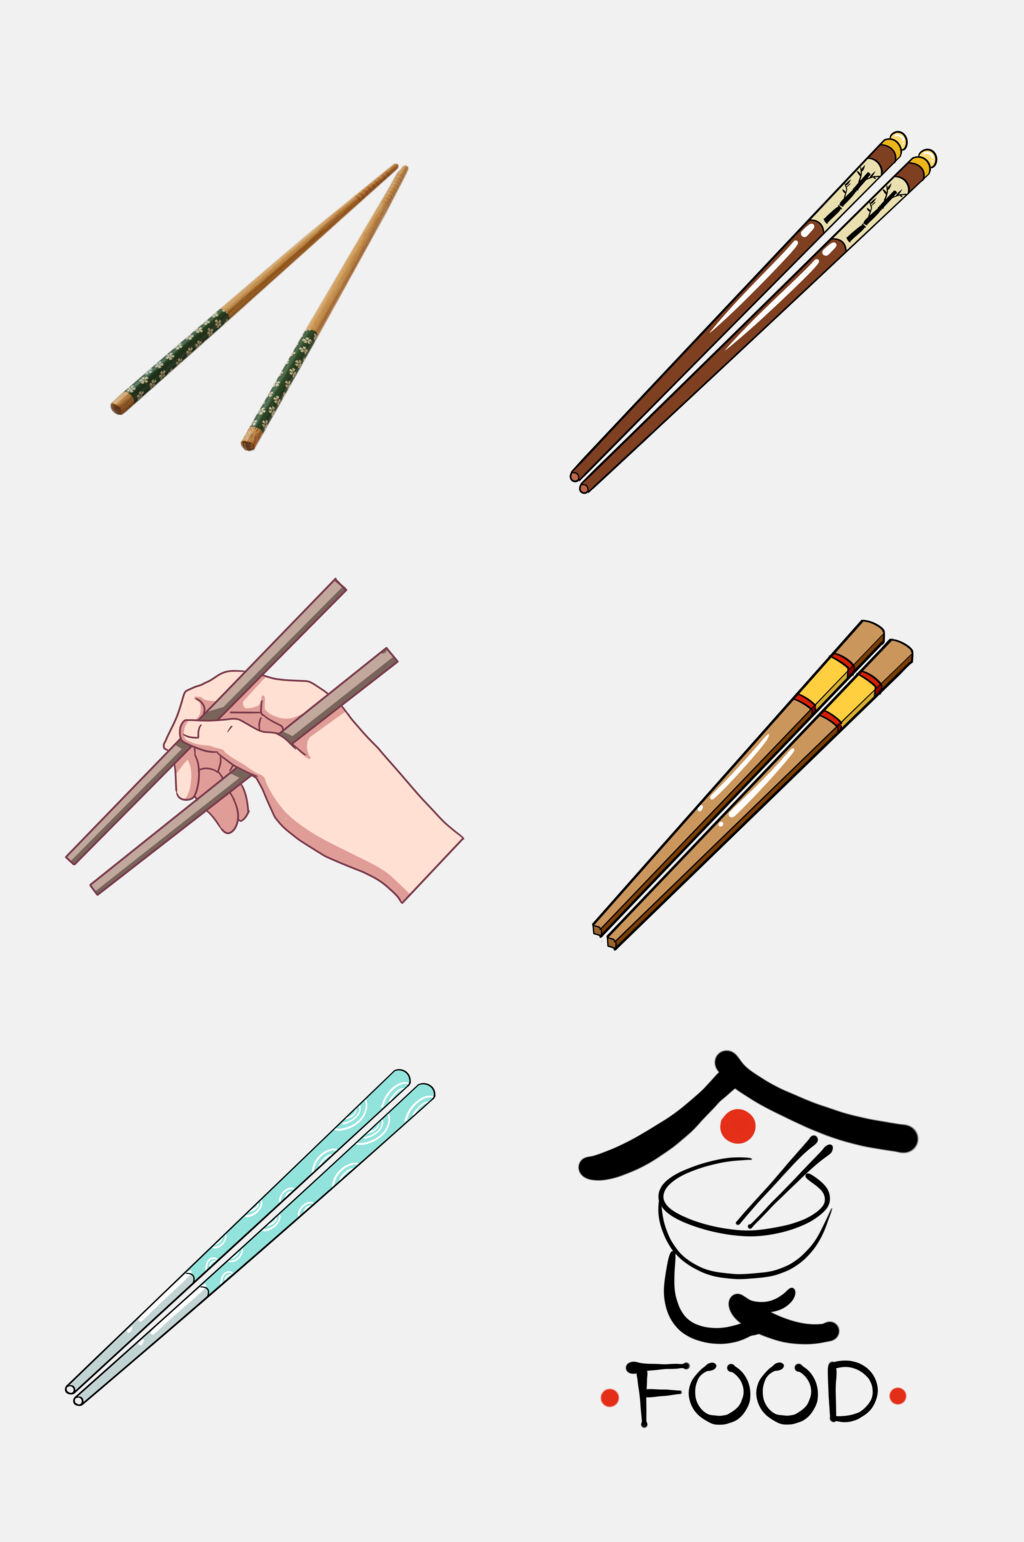 盘子和筷子简笔画图片